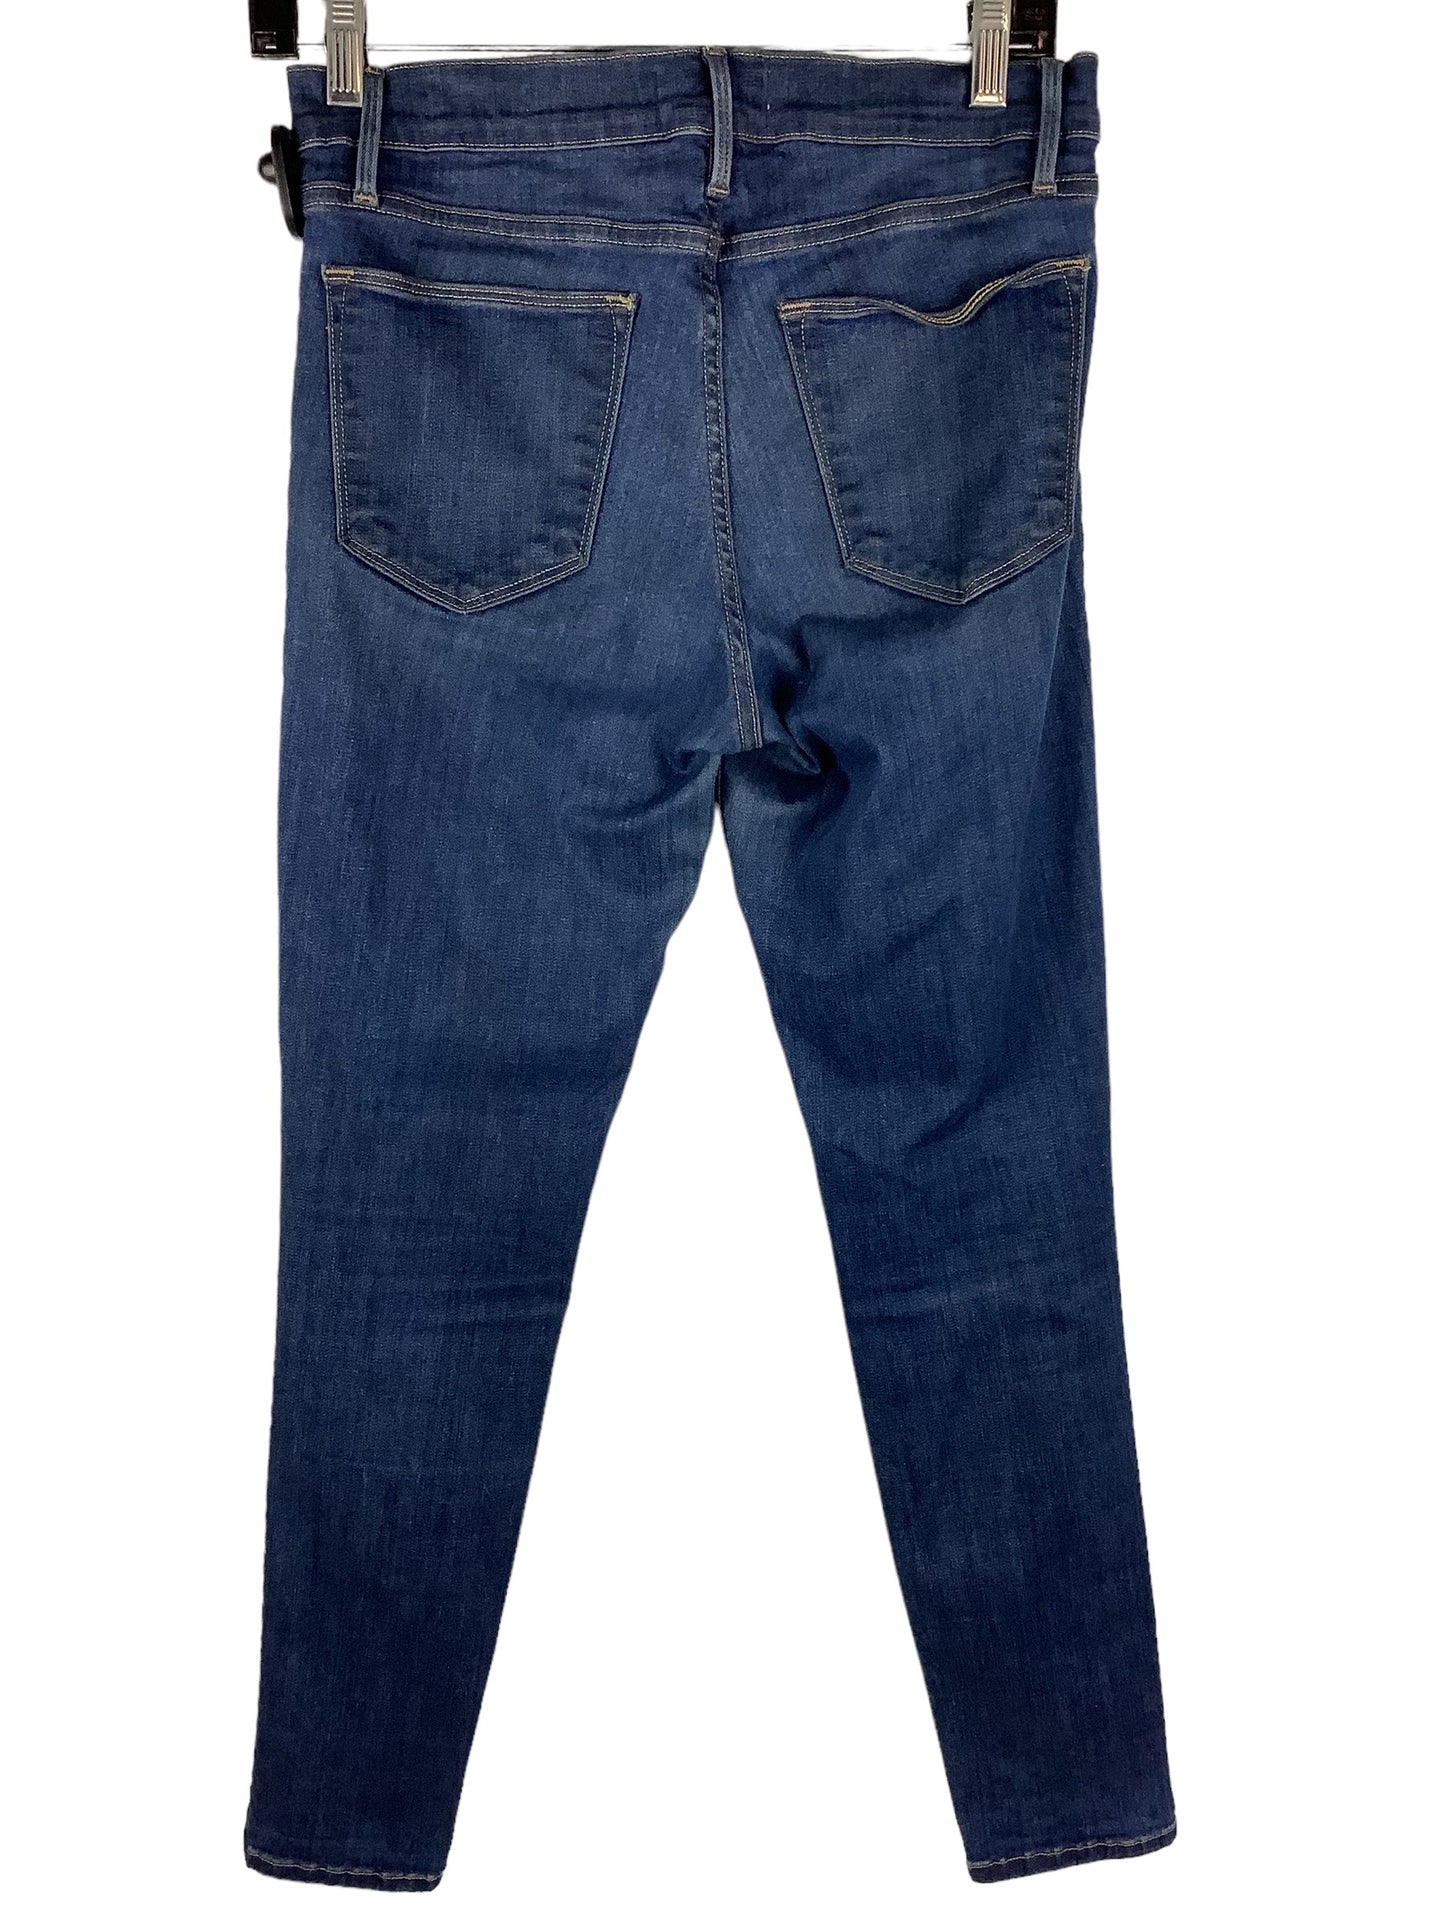 Jeans Designer By Frame  Size: 6